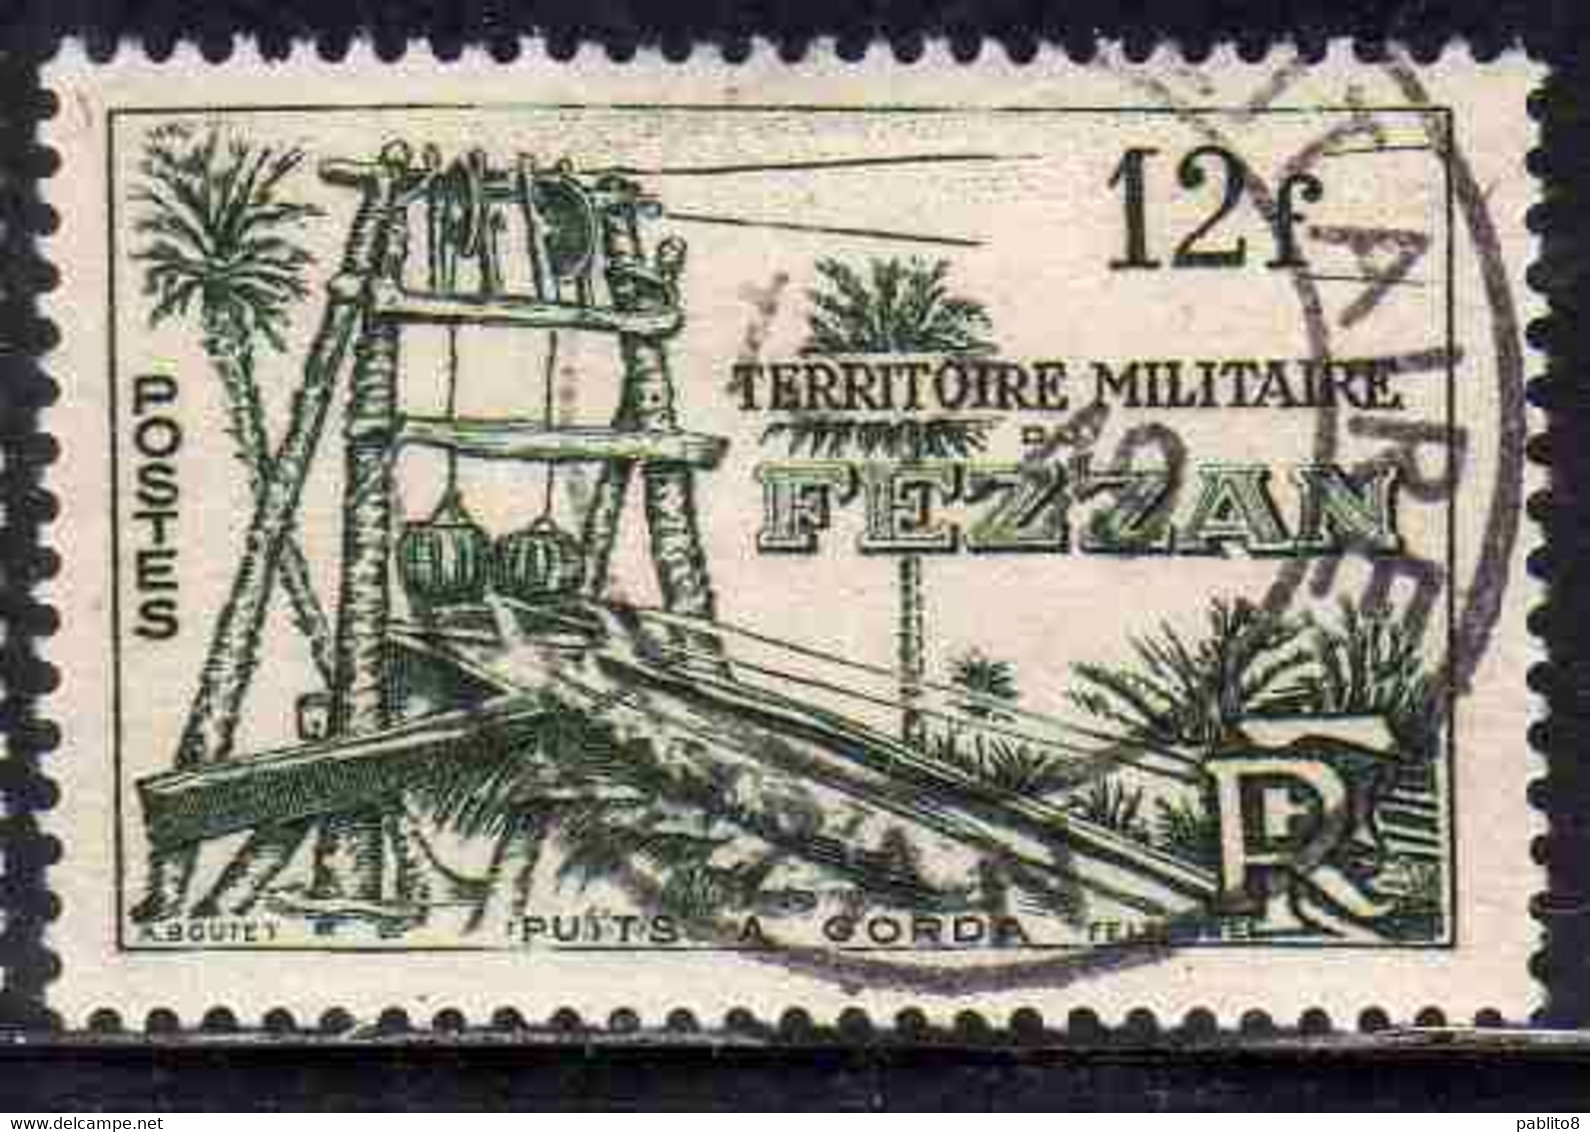 FEZZAN 1949 TERRITORIO MILITARE MILITAIRE POZZI DI GORDA 12f USATO USED OBLITERE' - Unused Stamps